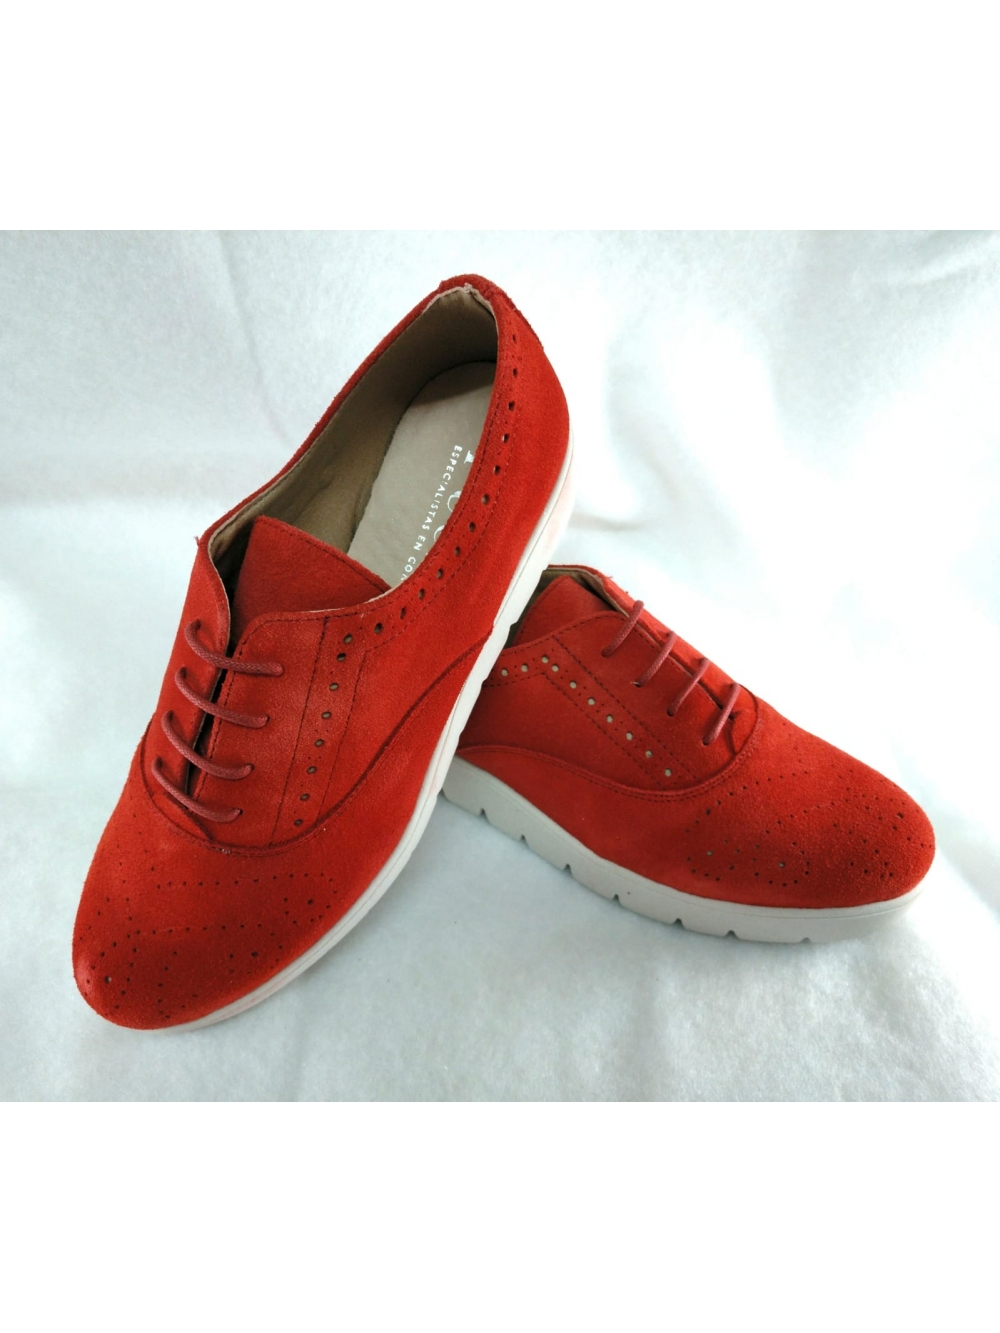 Zapato piel rojo - Calzados